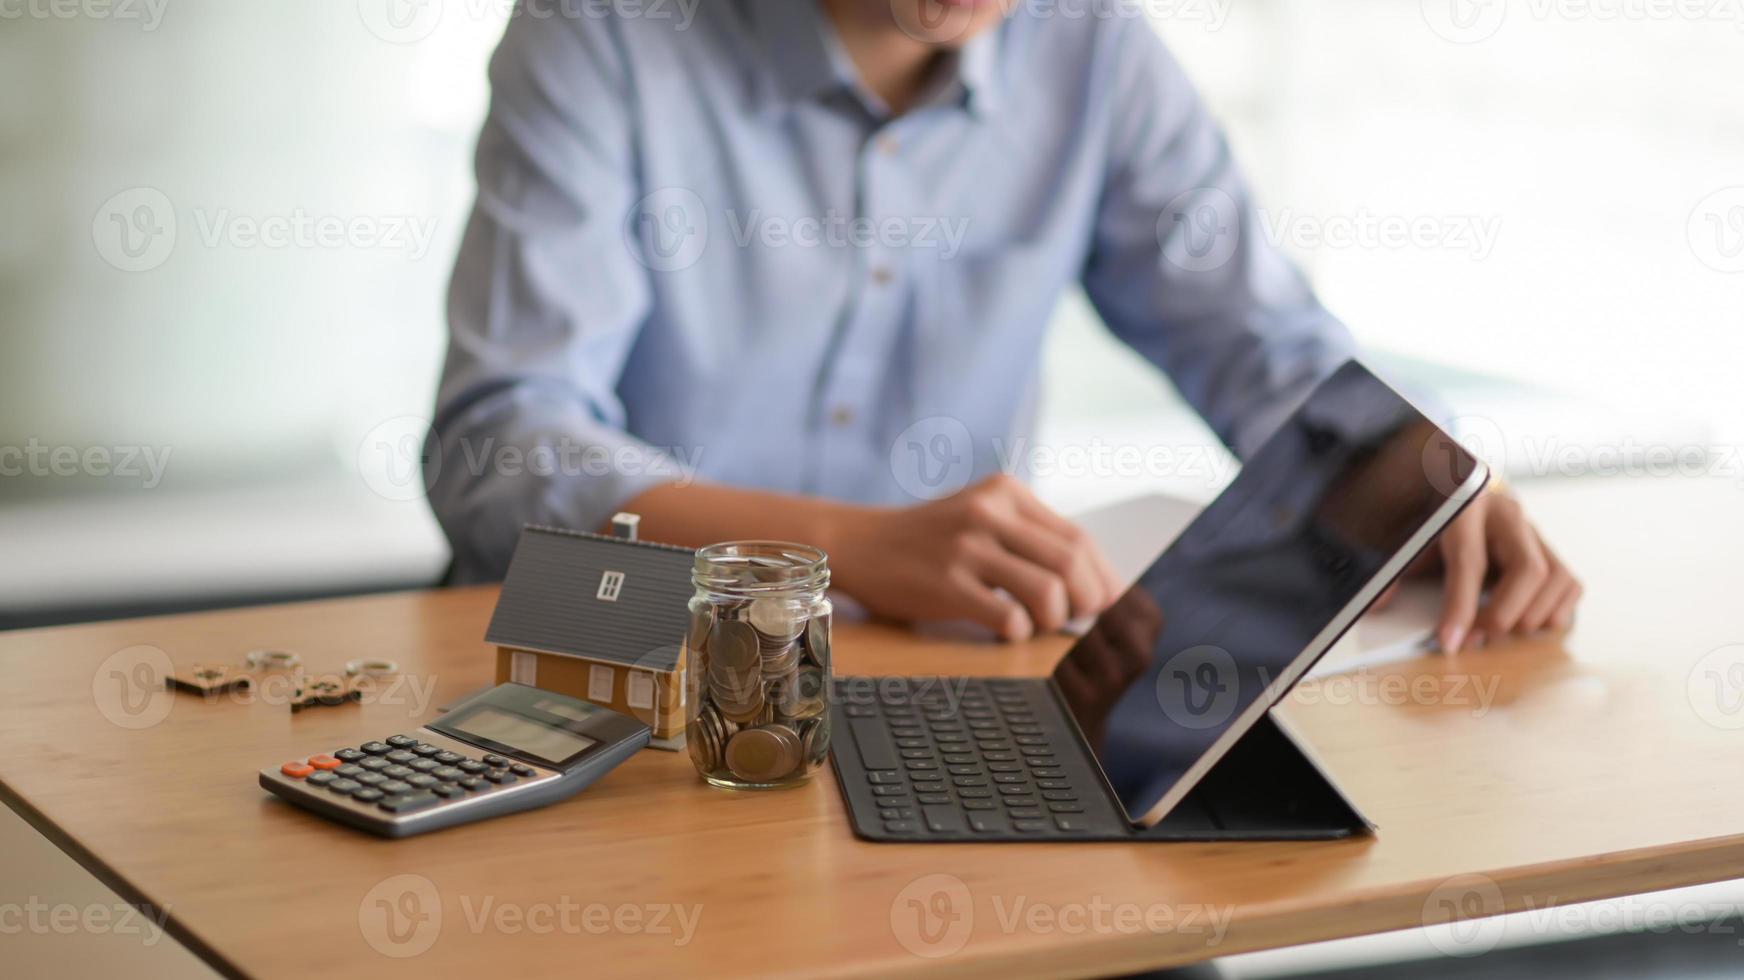 ordinateur portable, pièce de monnaie dans une bouteille en verre, calculatrice avec une maison modèle sur la table et un arrière-plan flou des gens assis en train de regarder des documents. photo